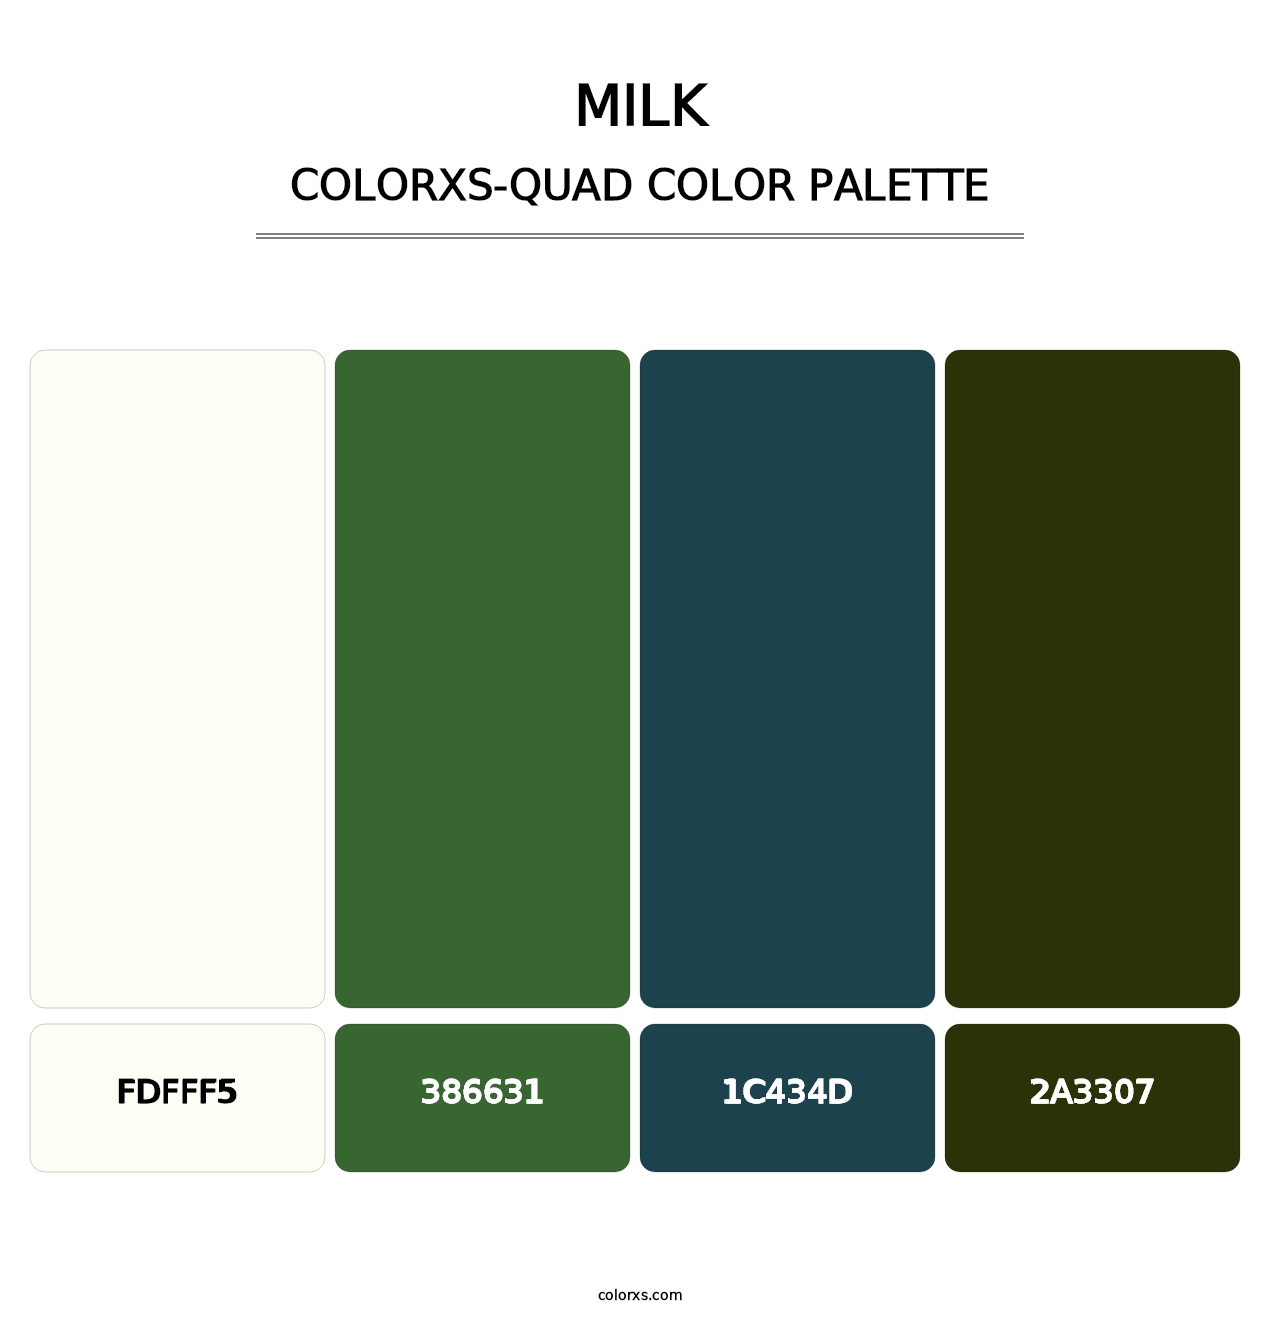 Milk - Colorxs Quad Palette